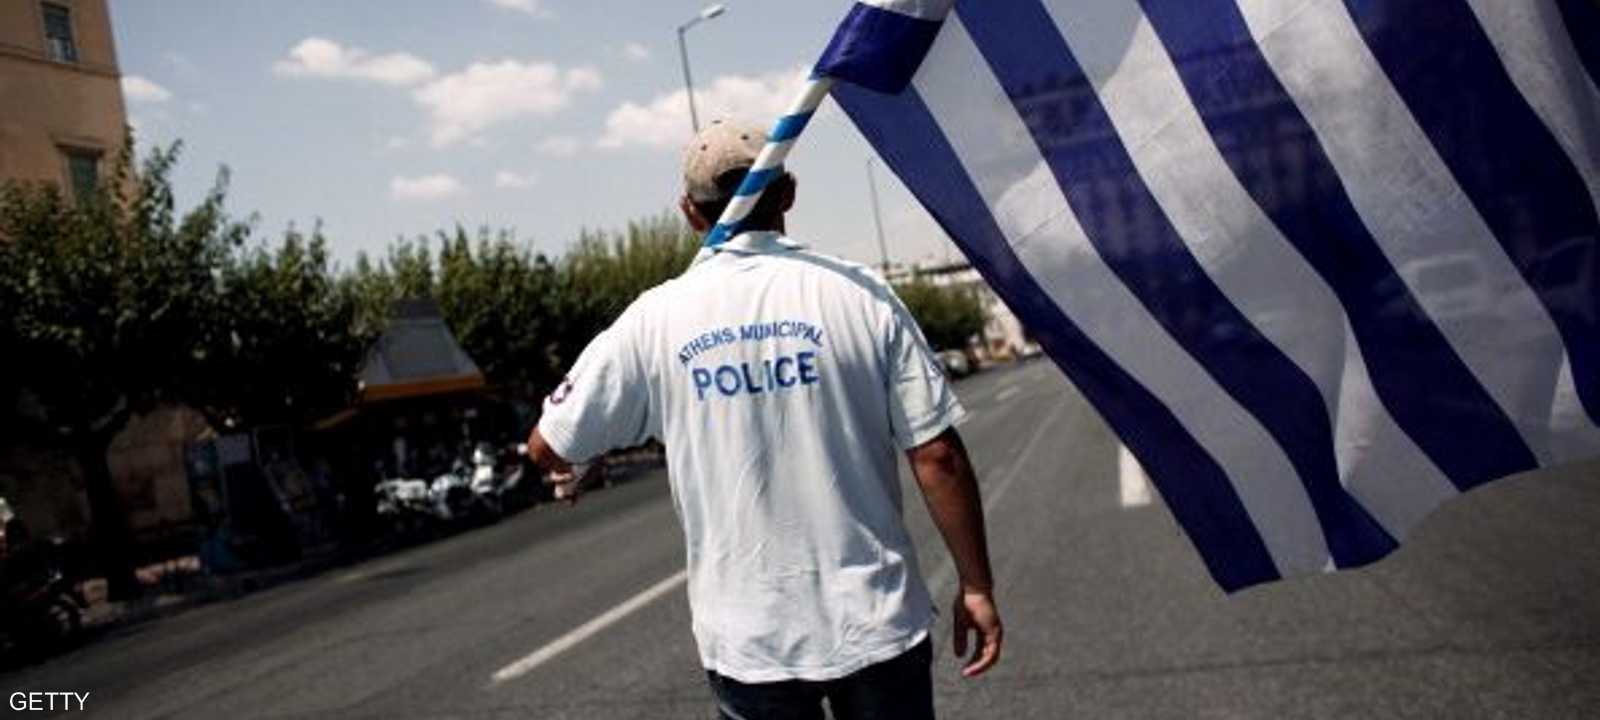 اليونان شهد عدد من الإضرابات منذ الأزمة الاقتصادية التي عصفت بالبلاد